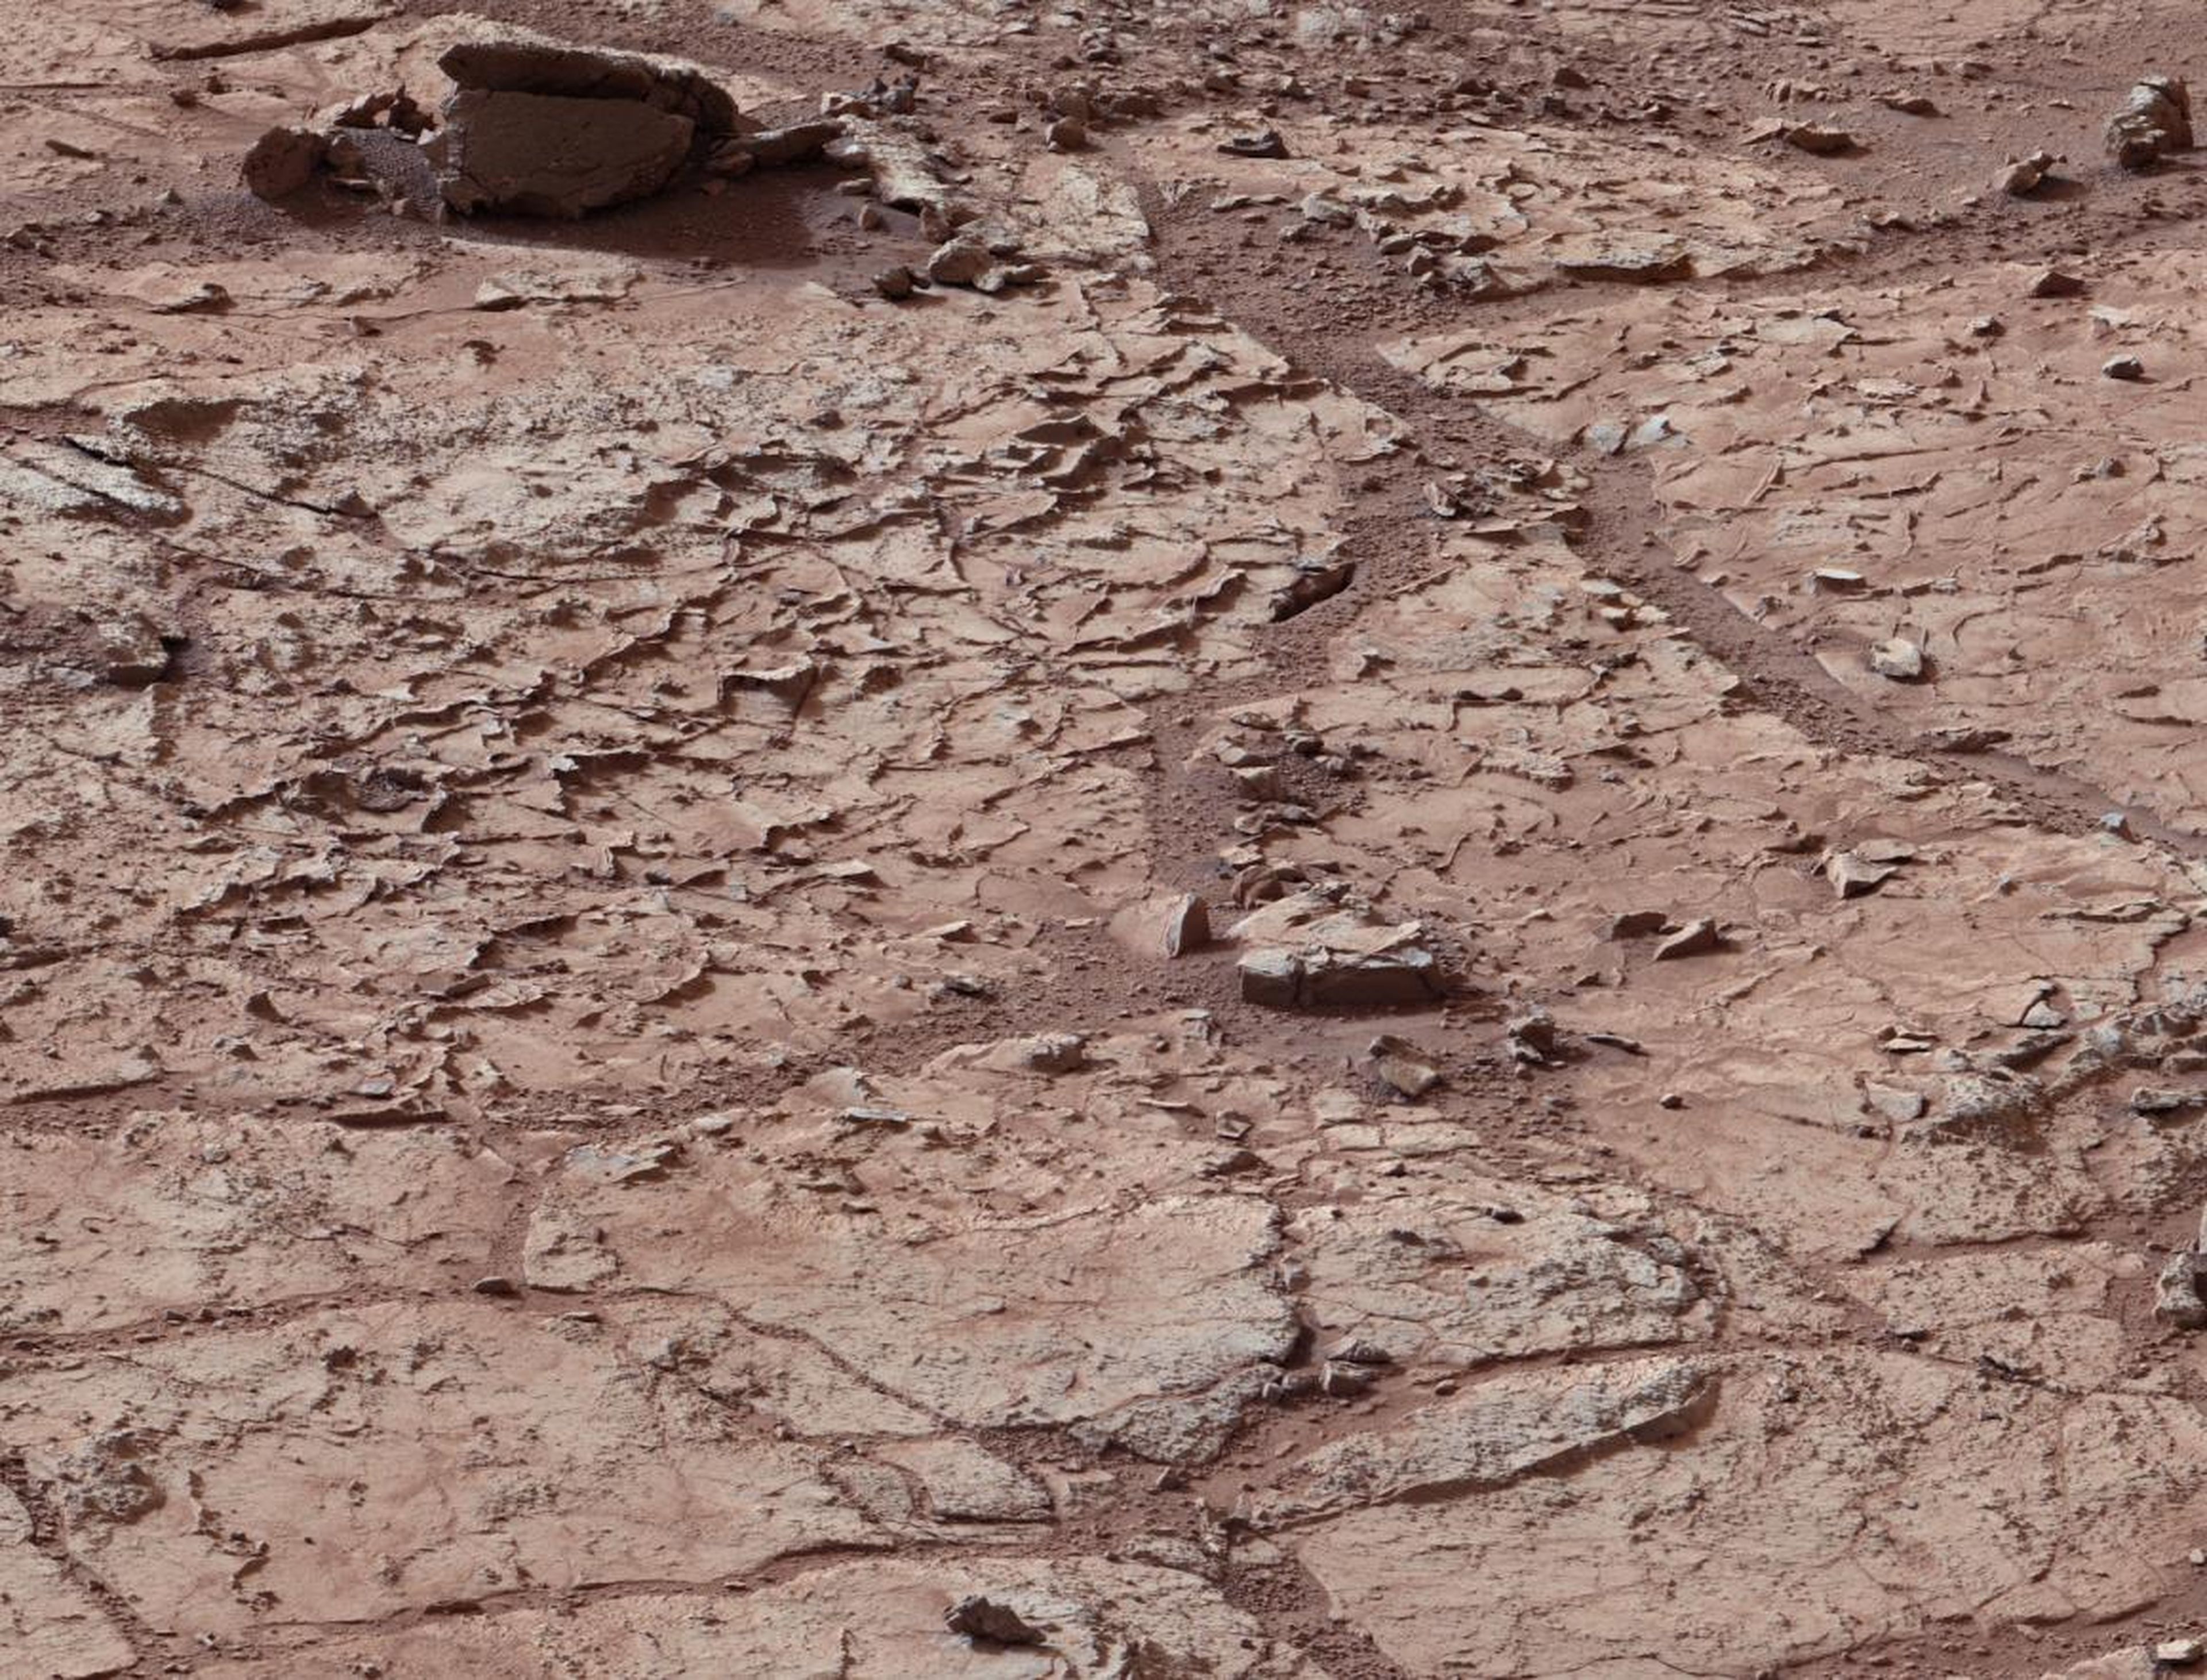 La superficie de Marte dentro del cráter Gale.